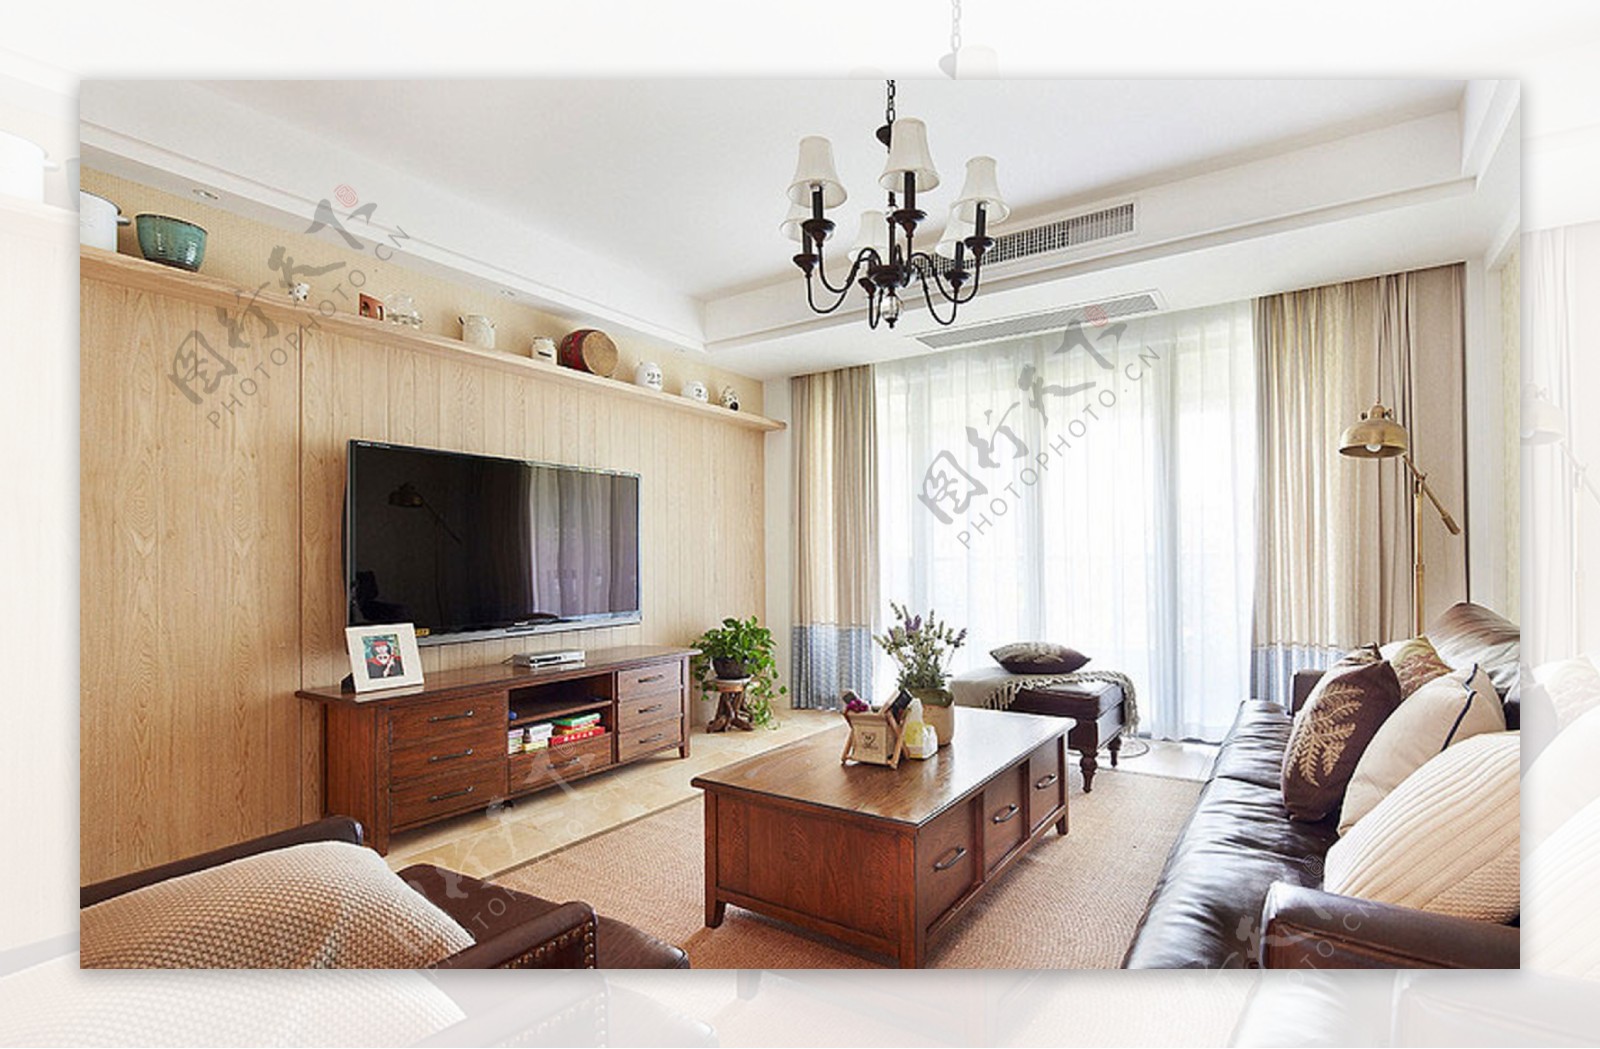 日式简约风格客厅电视机实木背景墙效果图